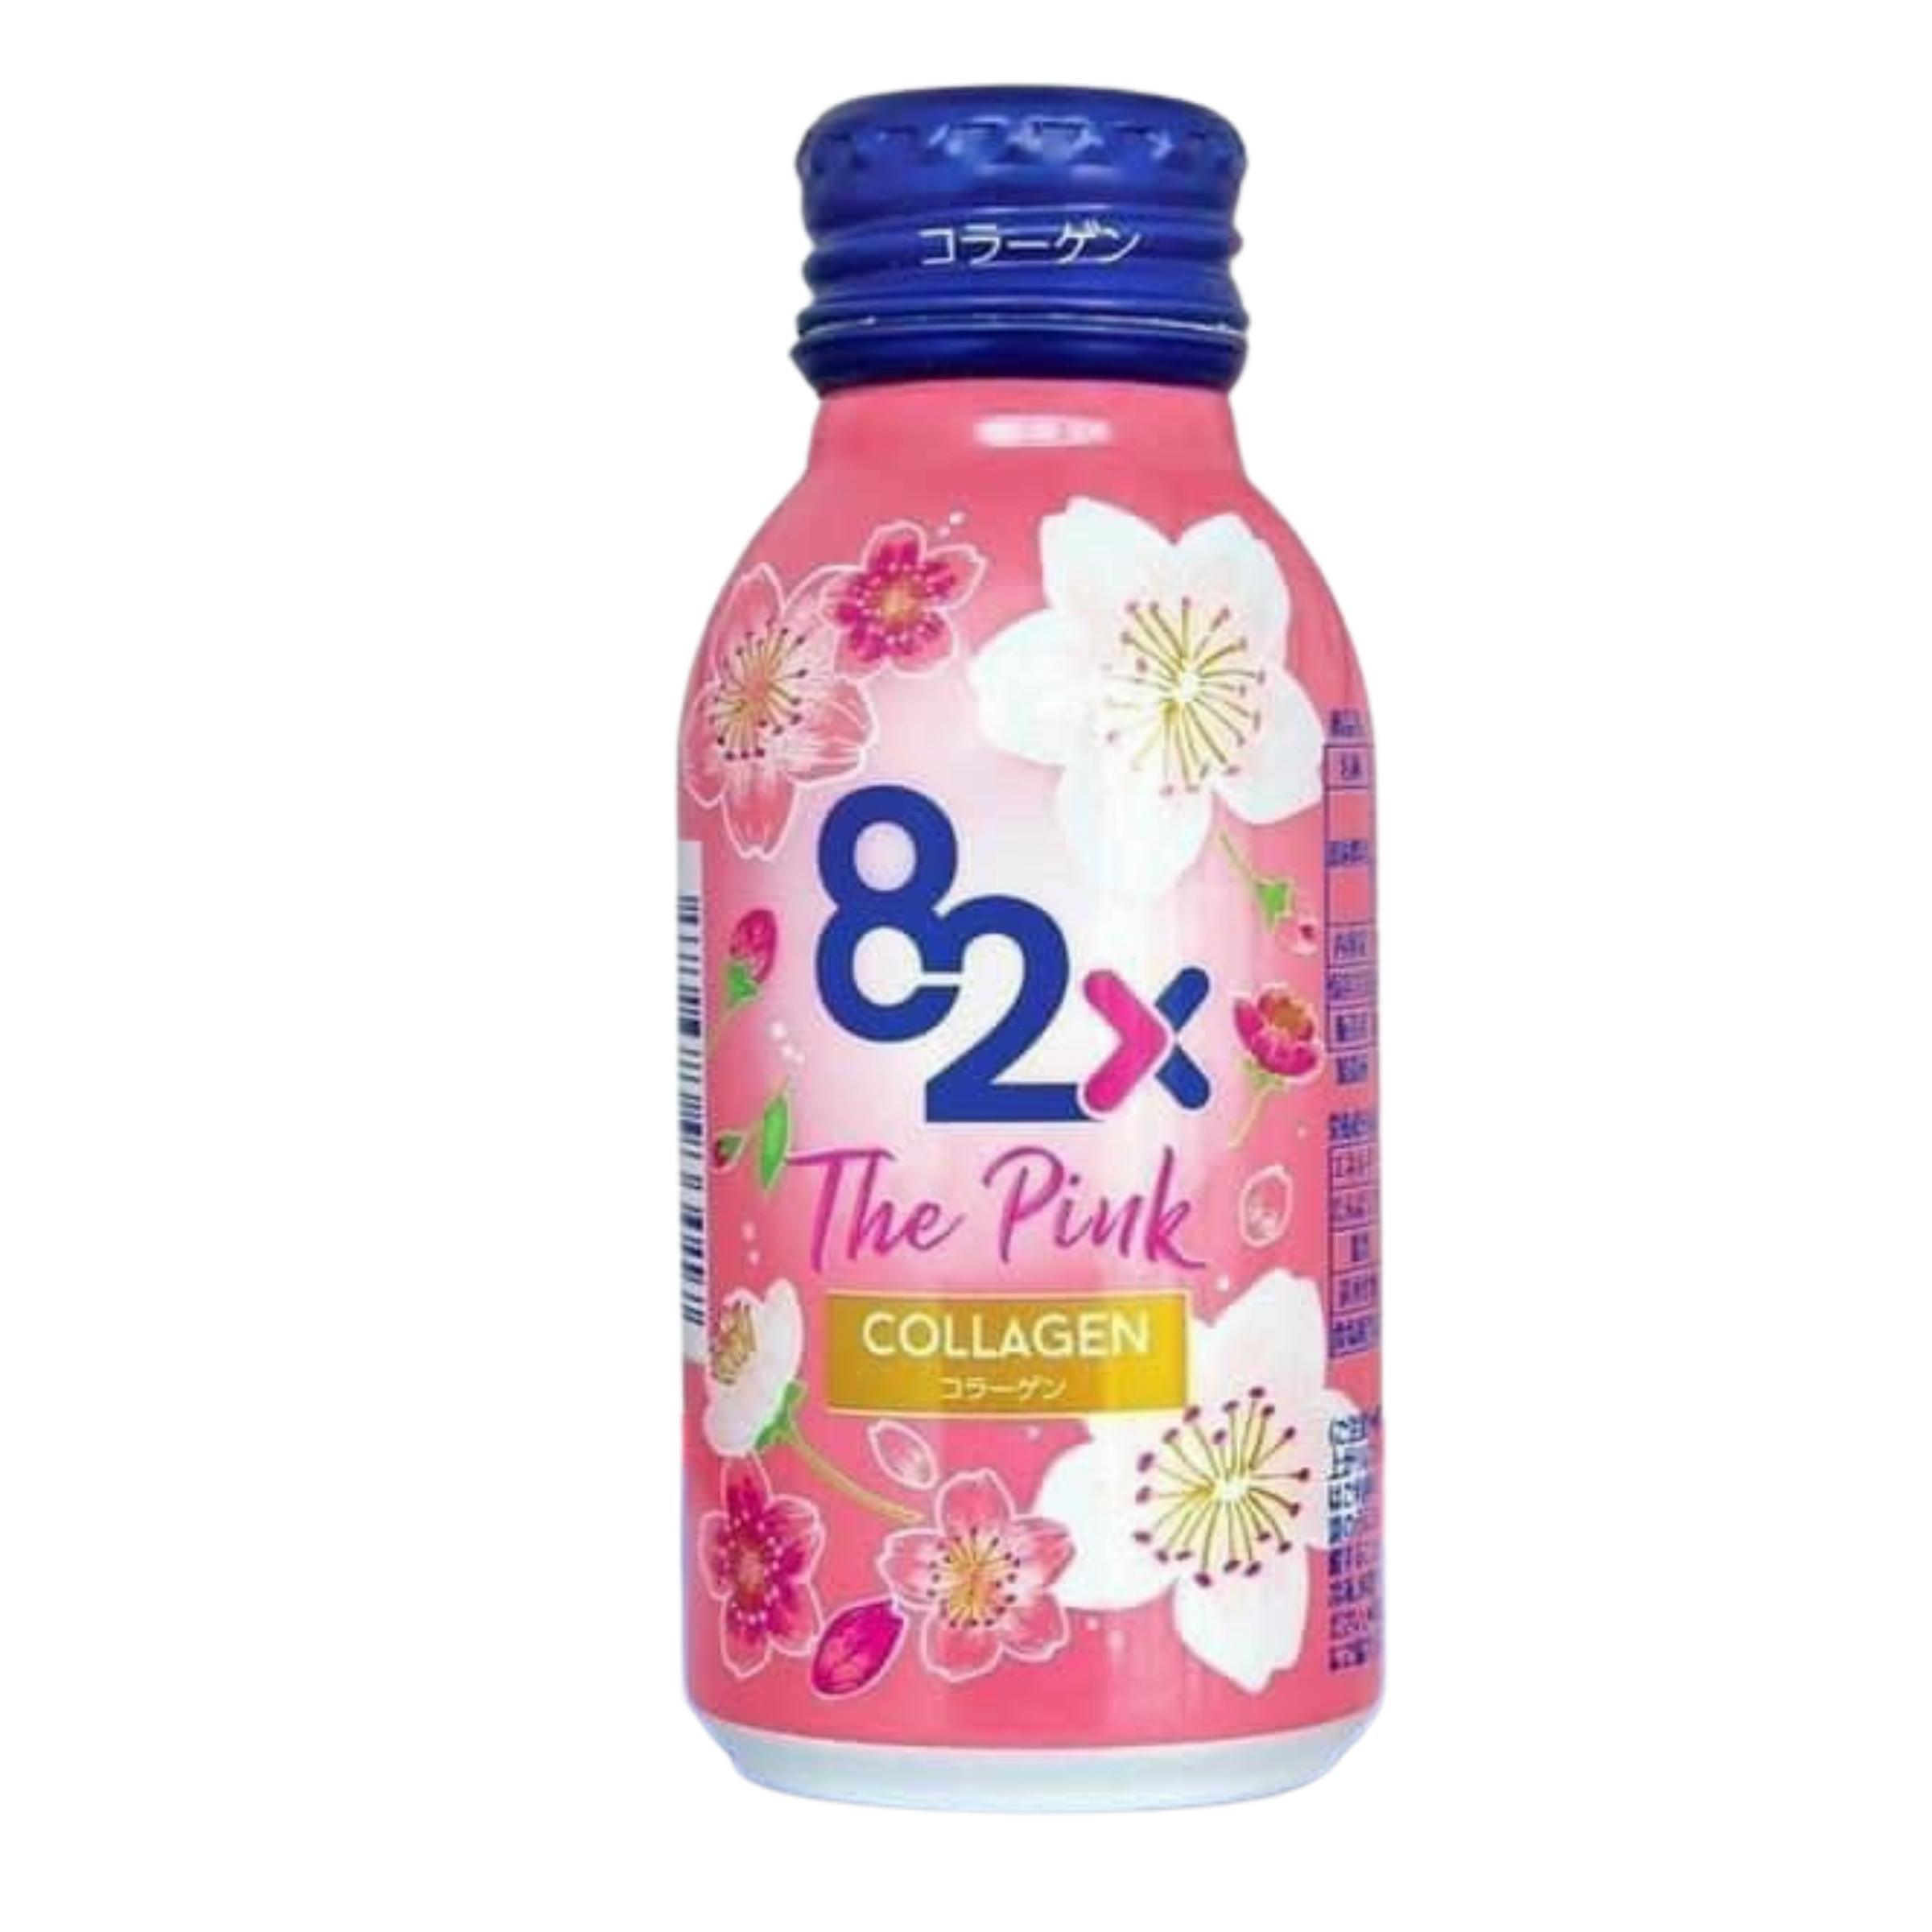 Nước Uống The Pink Collagen 82X Mashiro Chống Lão Hóa, Đẹp Vóc Dáng 10 Chaix100ml